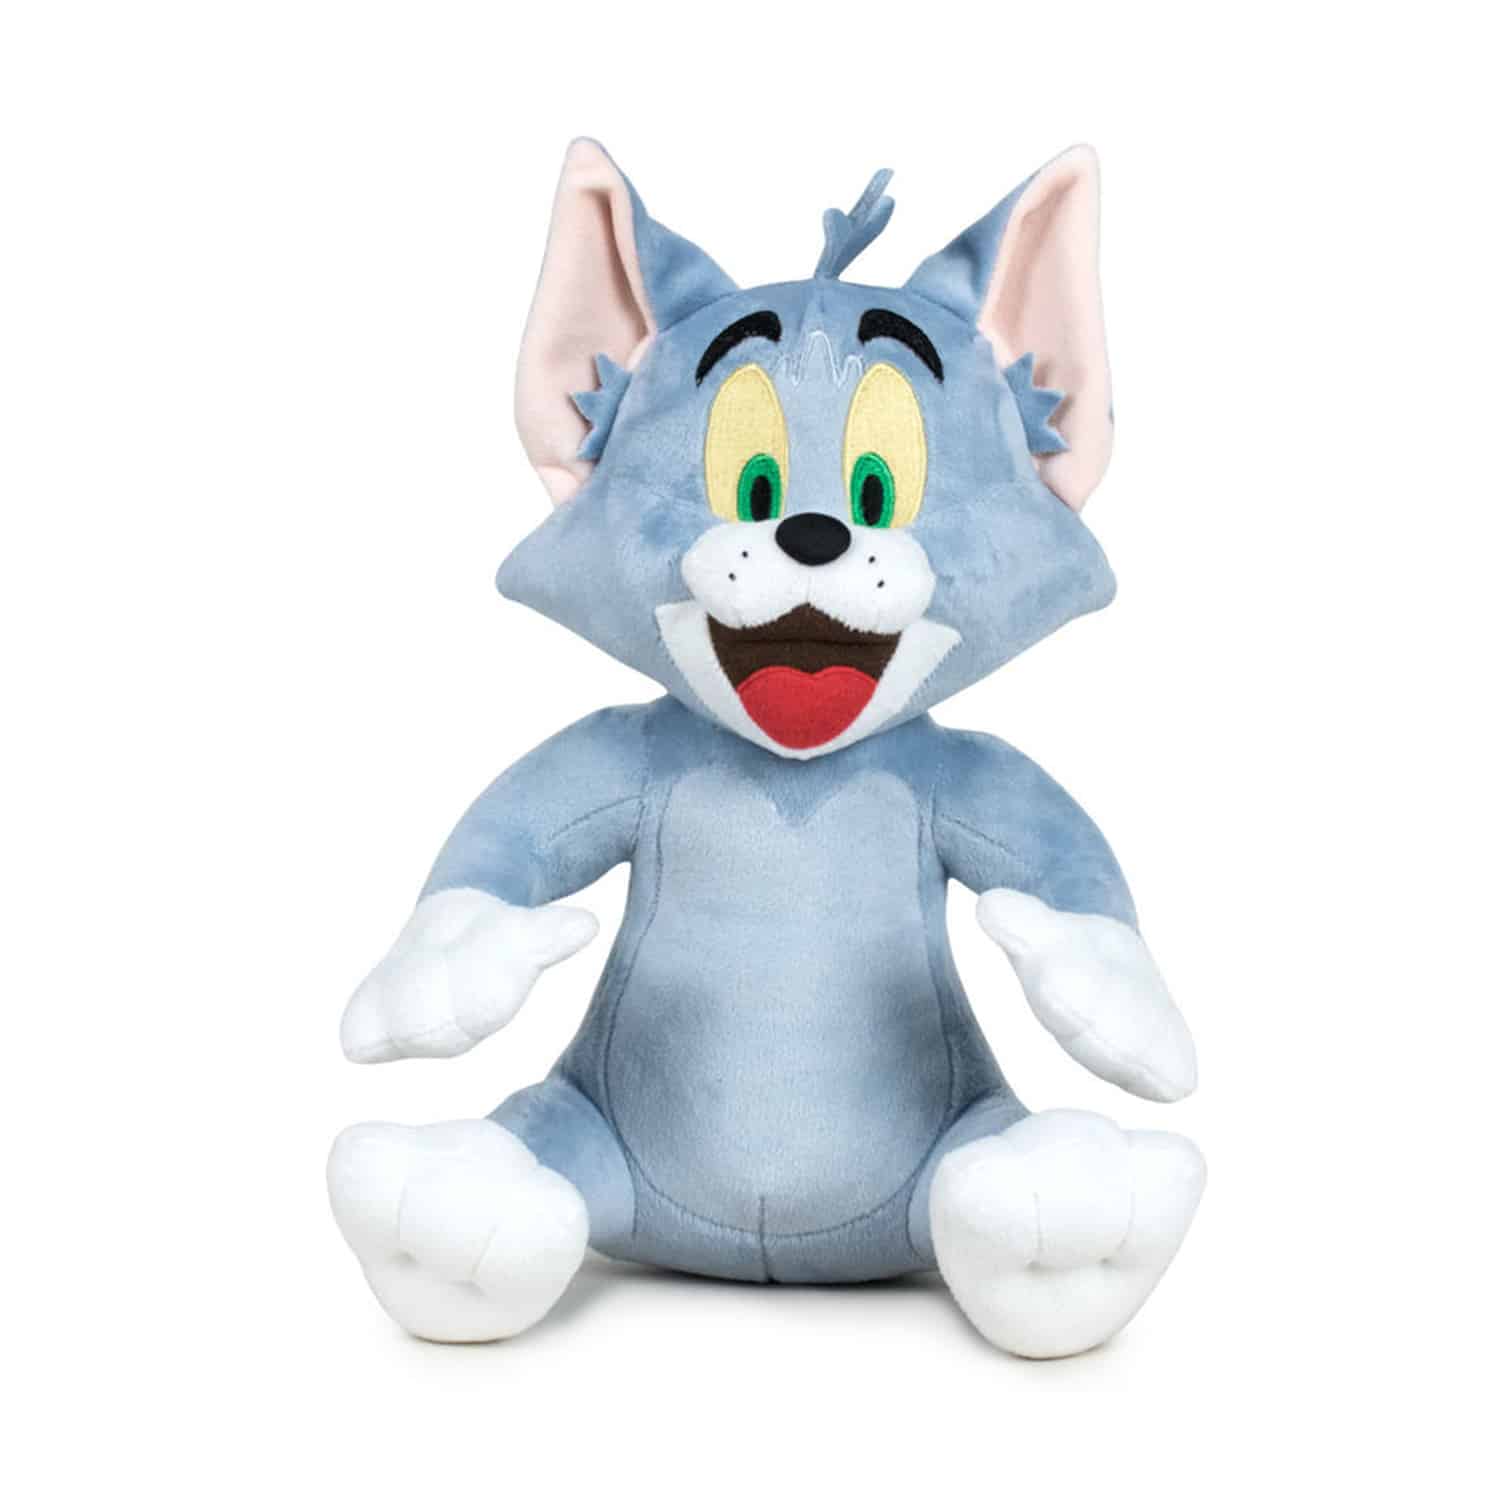 Tom & Jerry - Tom Plush Toy